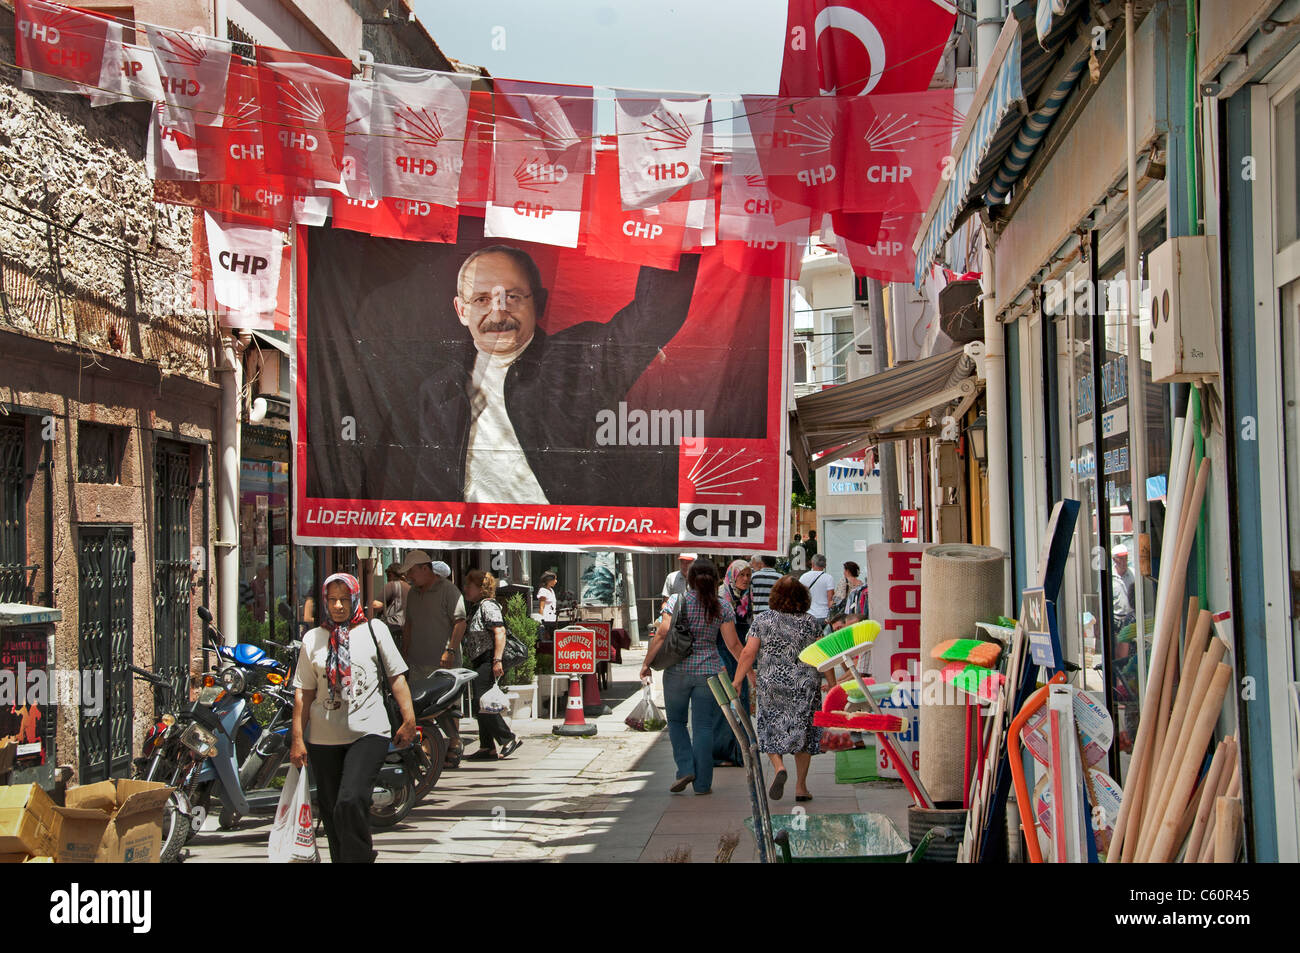 Ayavalik mercado antiguo bazar turco Turquía encuestas encuesta Foto de stock